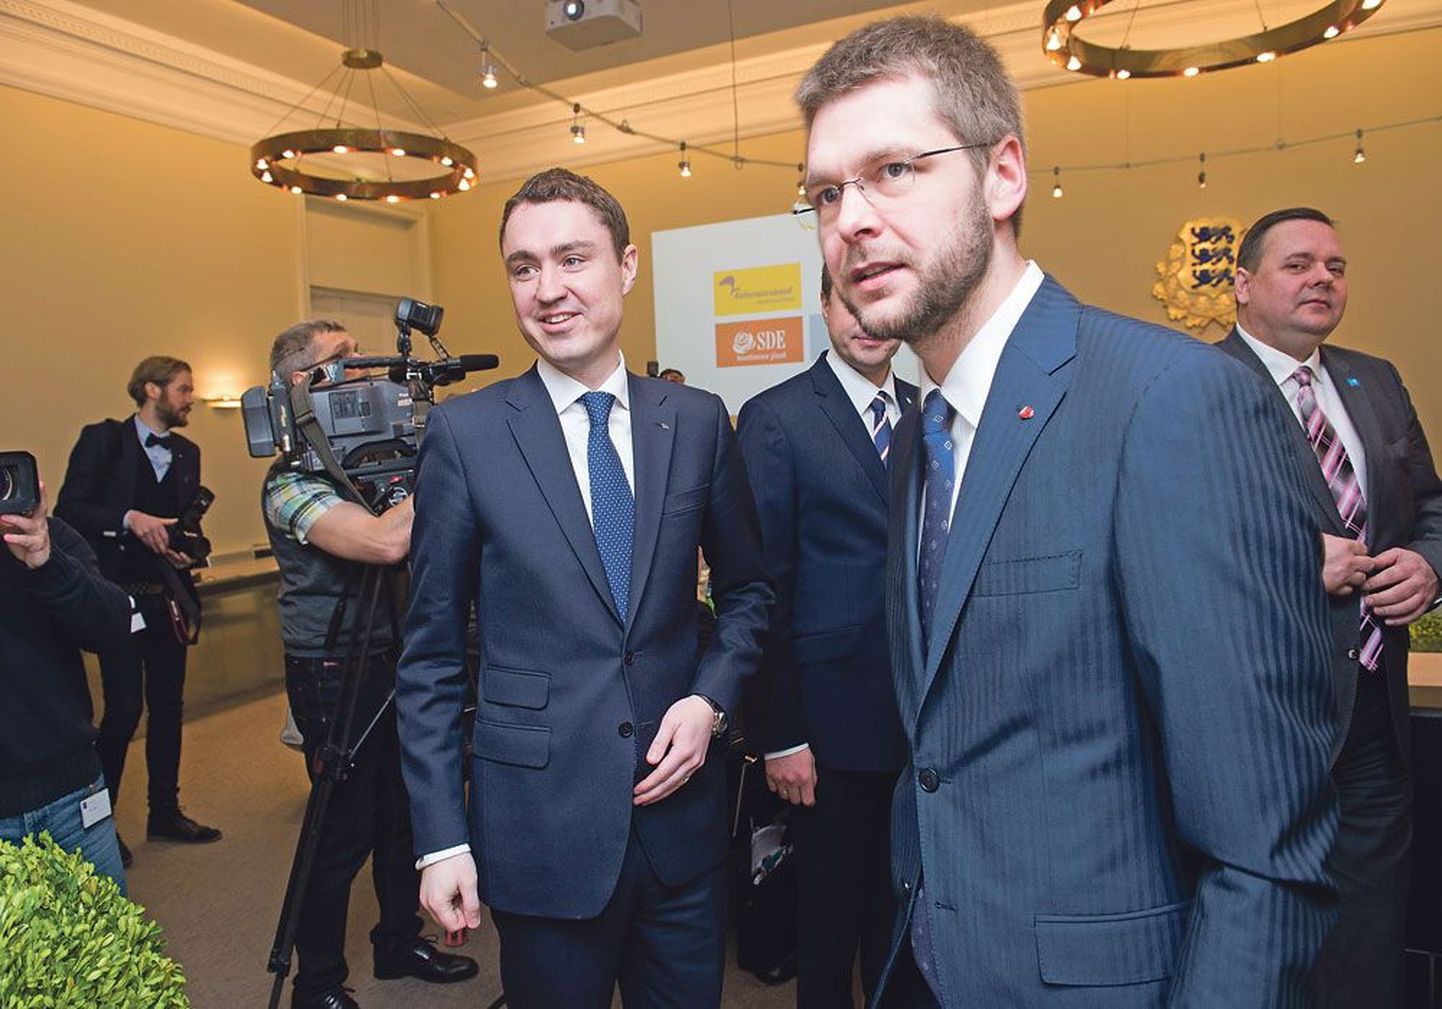 Премьер-министру Таави Рыйвасу (слева) предстоит уладить ситуацию с кандидатом на пост в Европейской контрольной палате, против которого выступает Евгений Осиновский (справа).